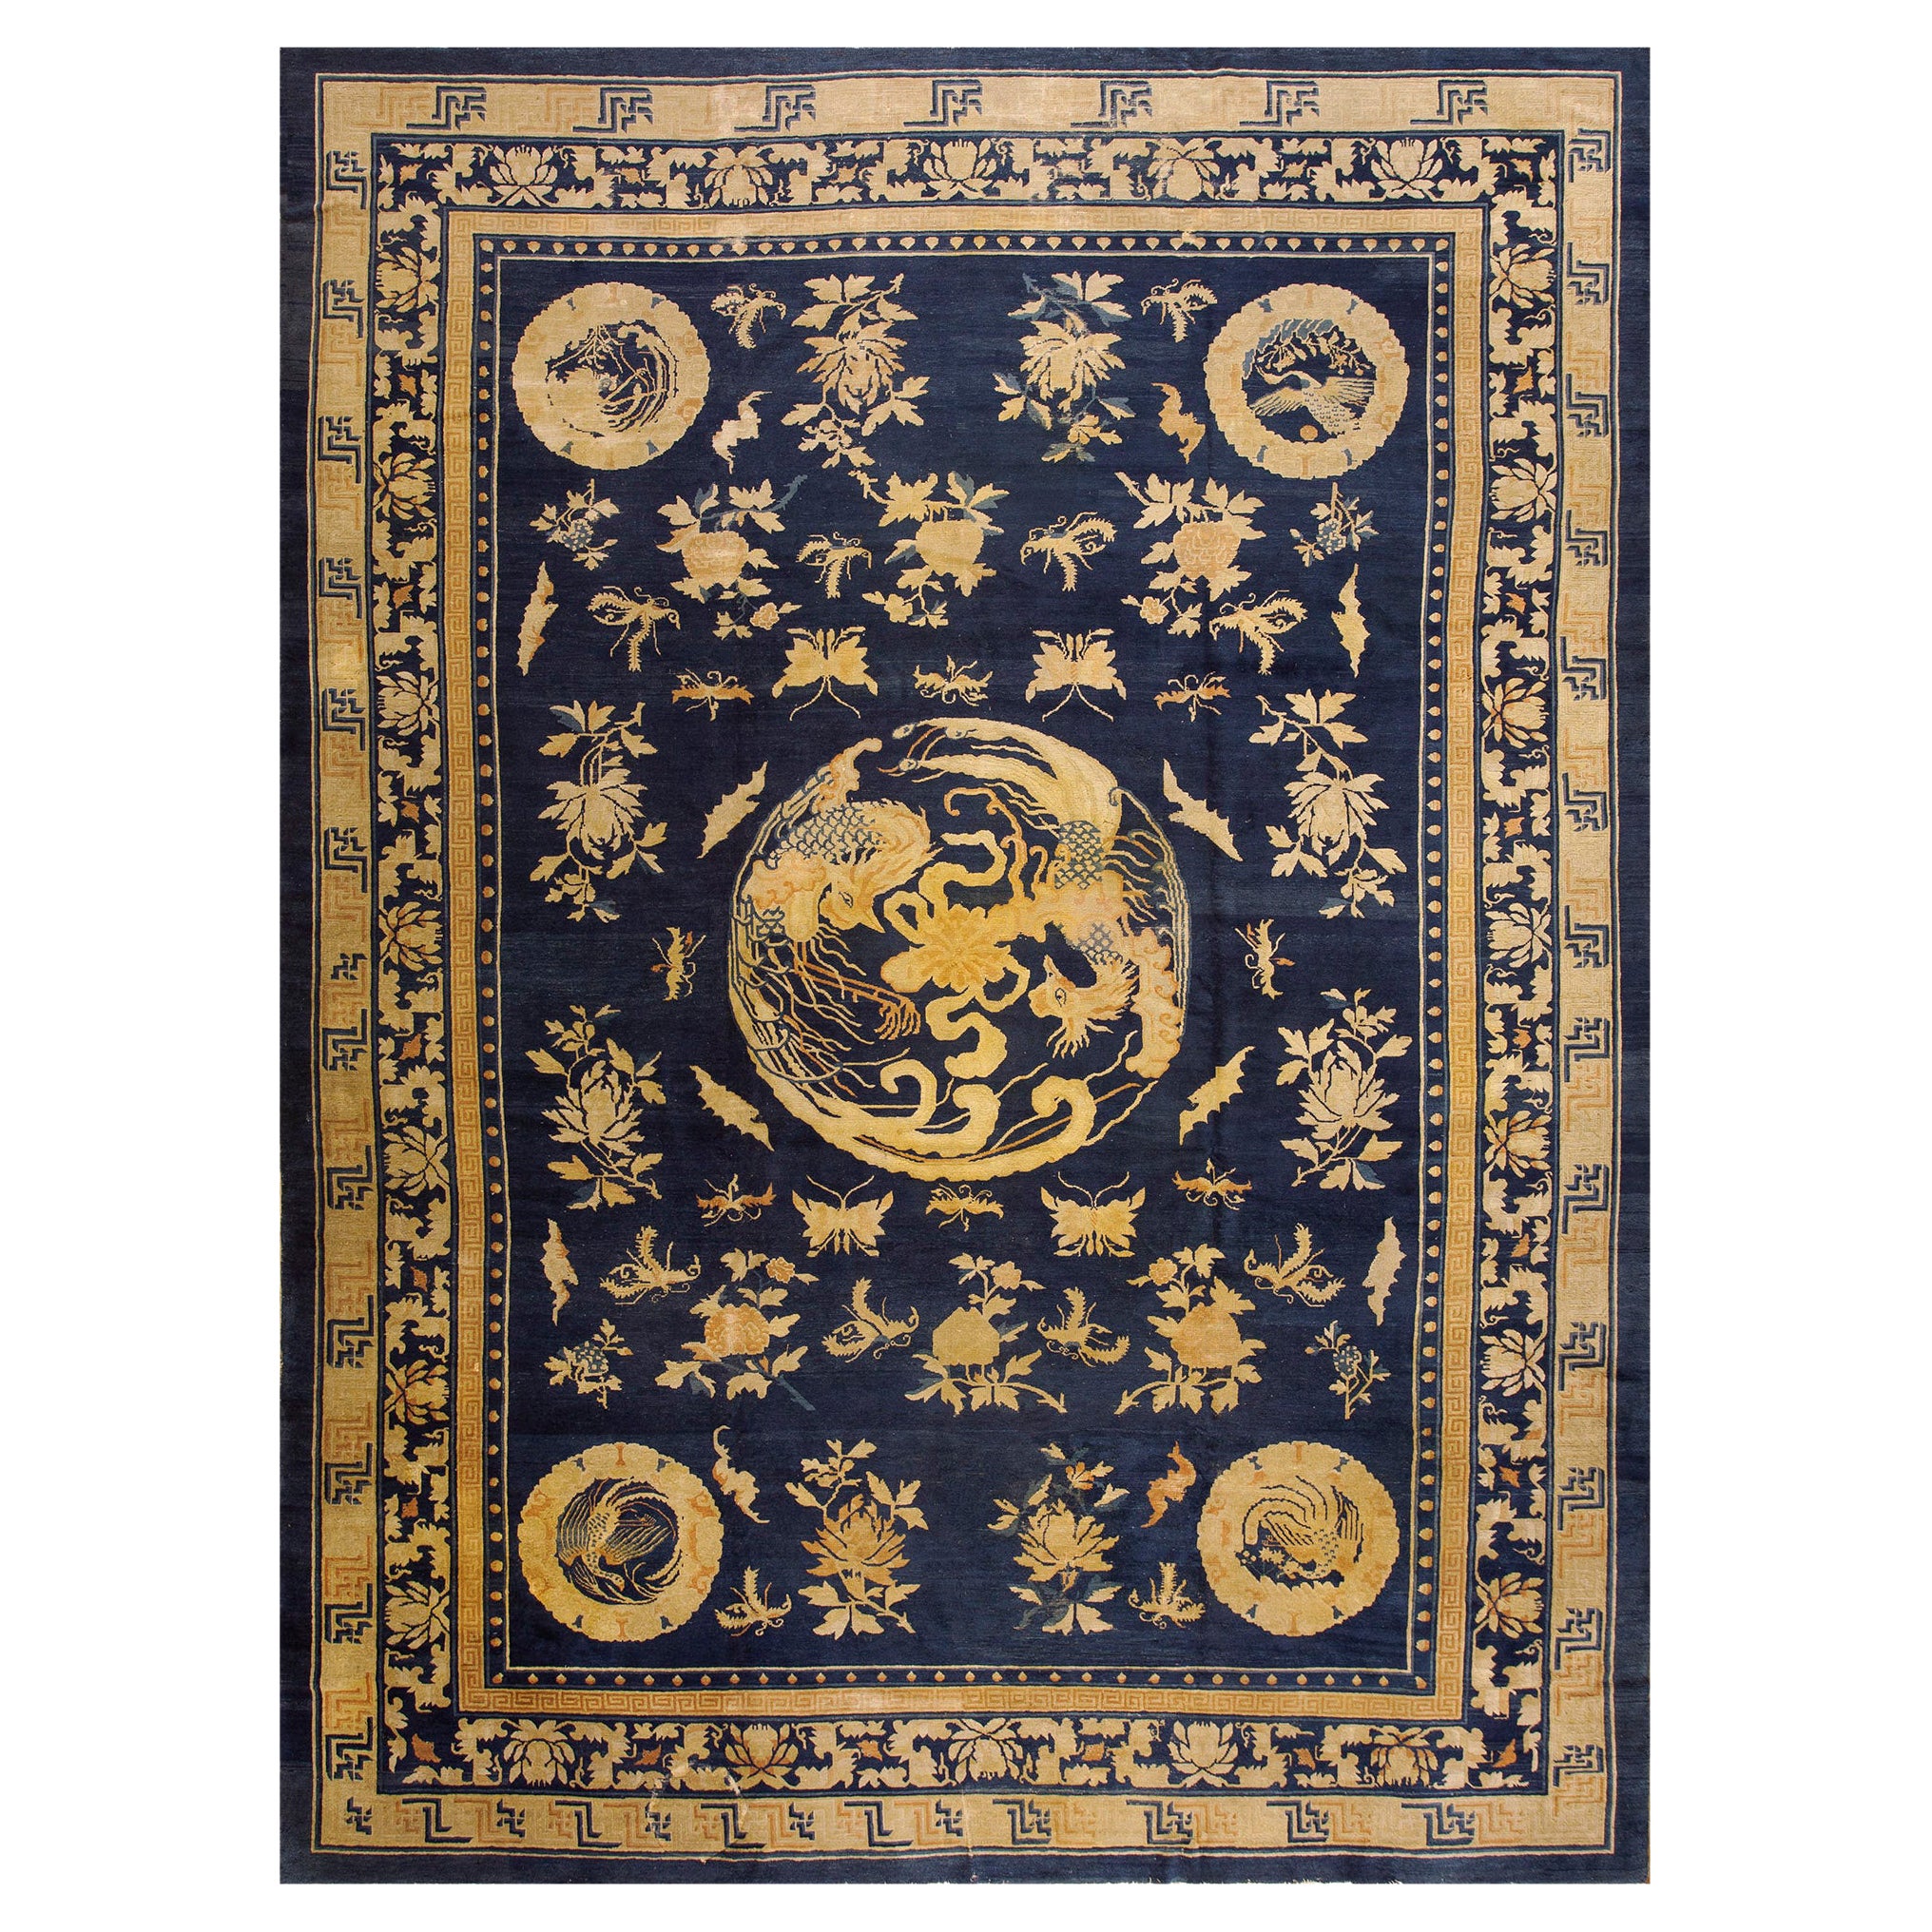 Chinesischer Peking-Teppich des späten 19. Jahrhunderts ( 10' 9''x 14' 3'' - 327 x 434 cm)